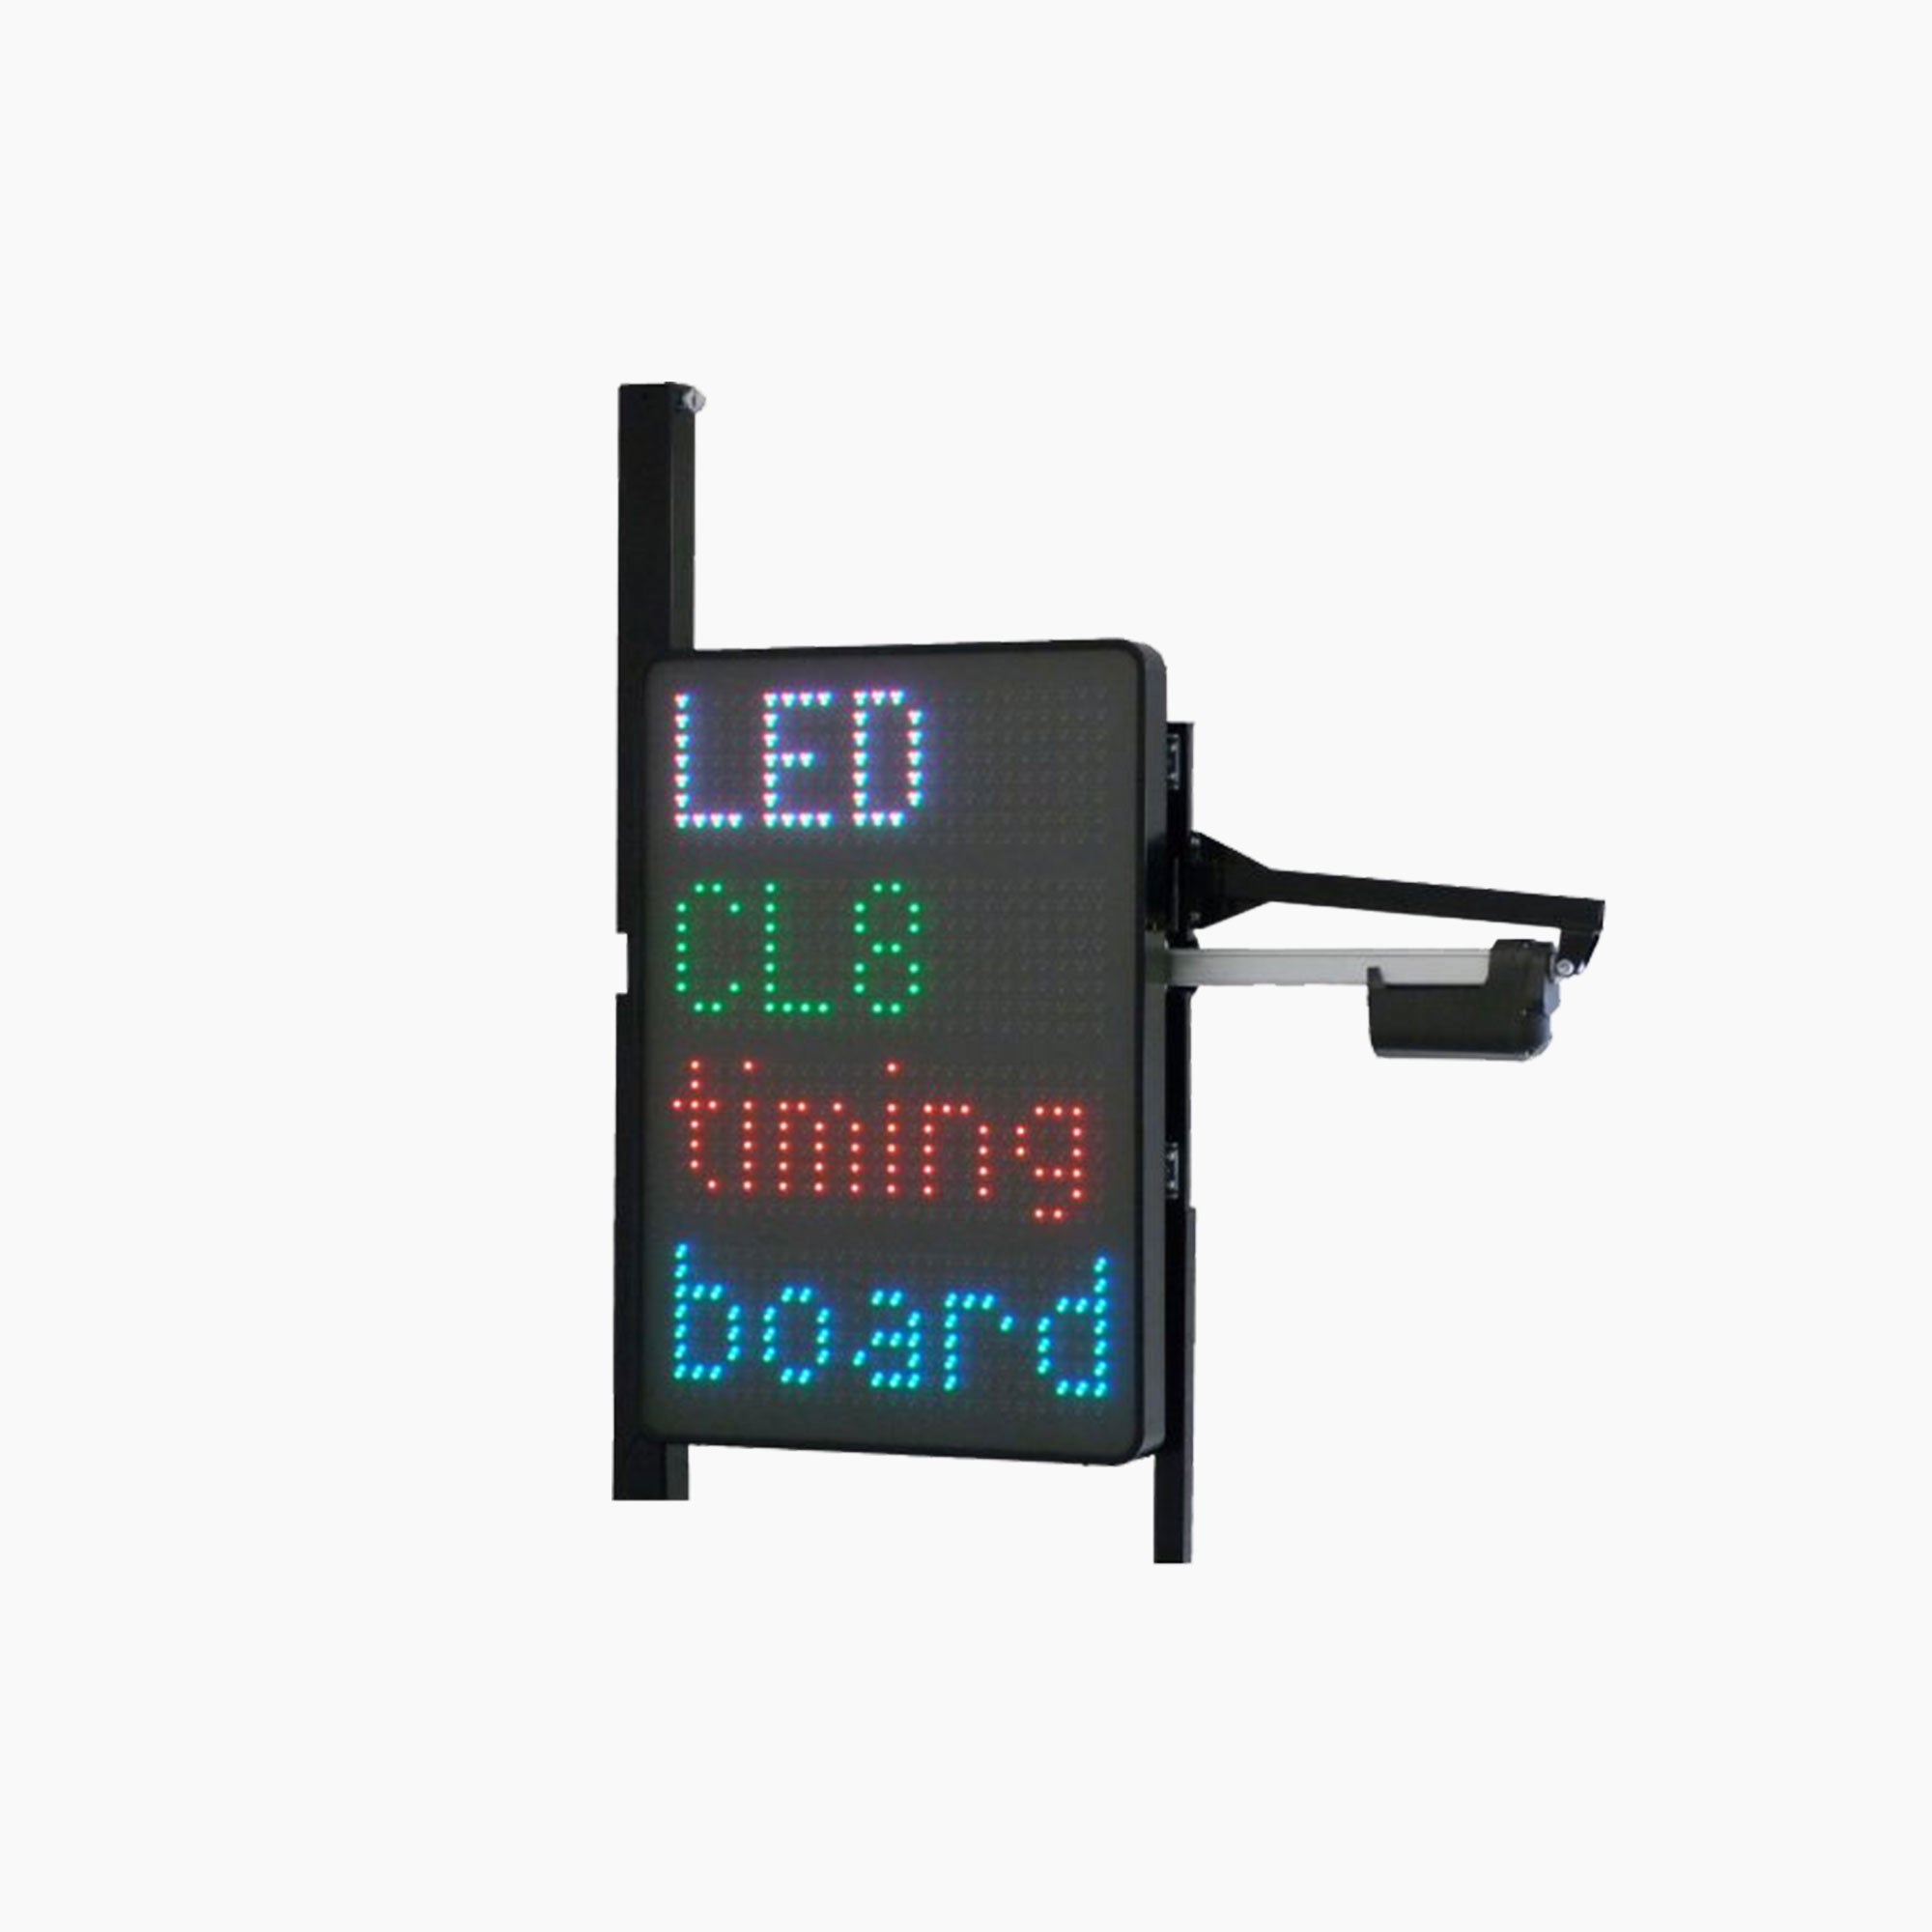 Caseliner | LED Pit Board CL-15-LED Timing Board-Caseliner-gpx-store